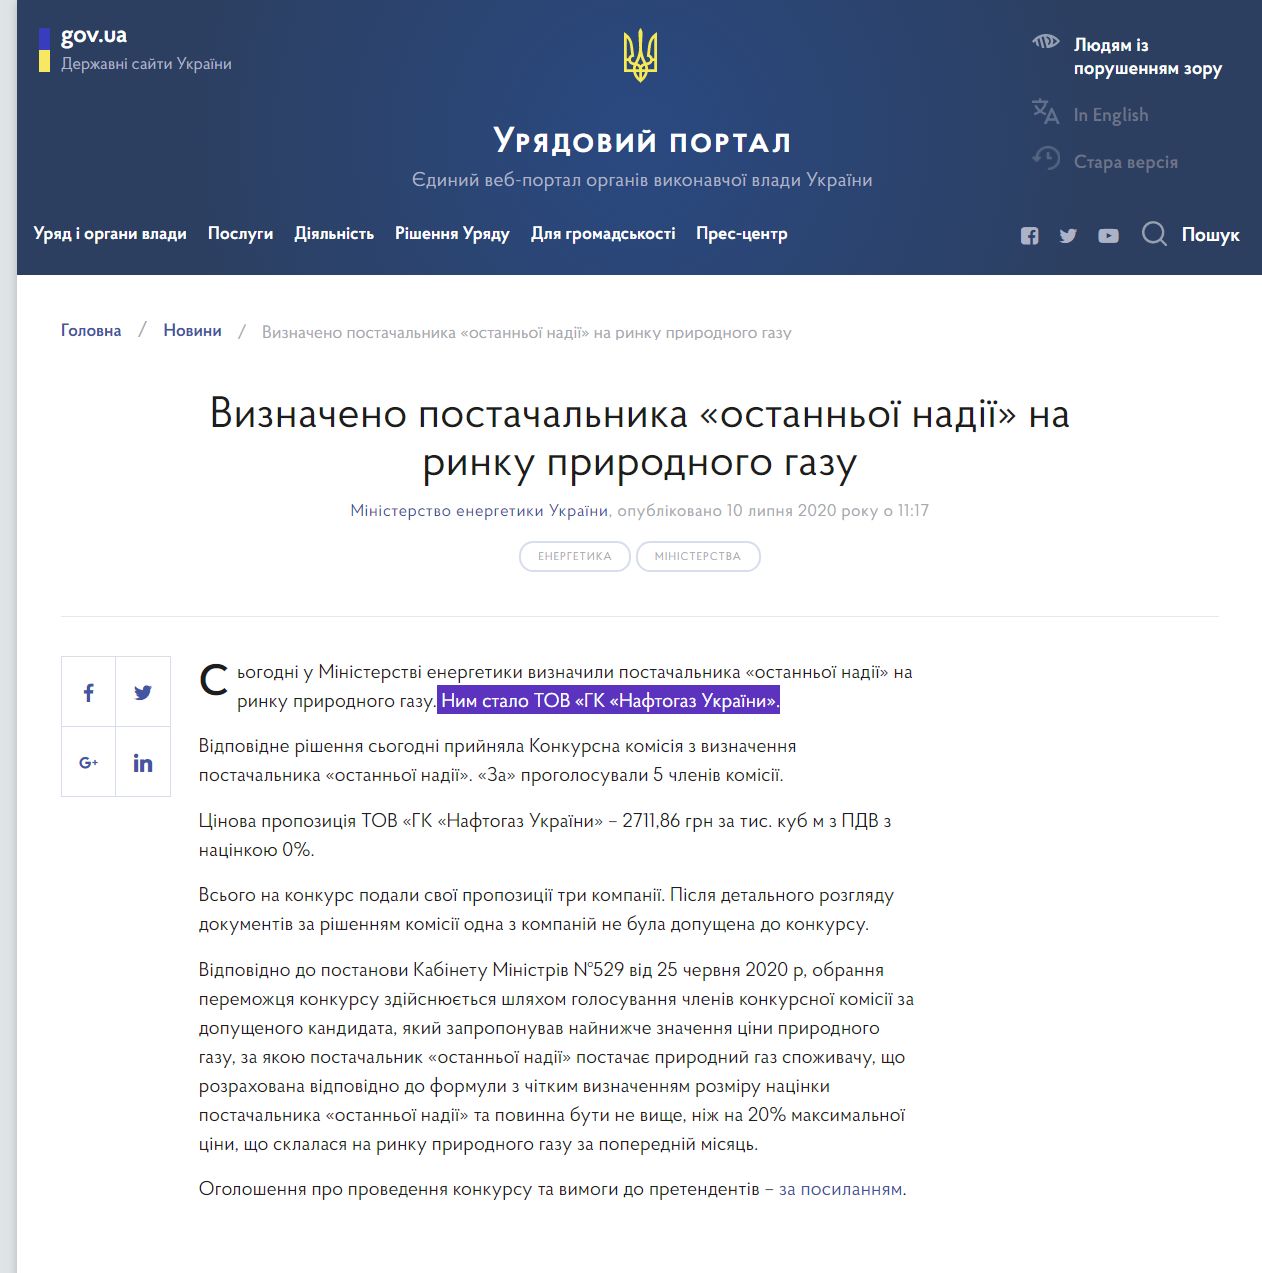 https://www.kmu.gov.ua/news/viznacheno-postachalnika-ostannoyi-nadiyi-na-rinku-prirodnogo-gazu